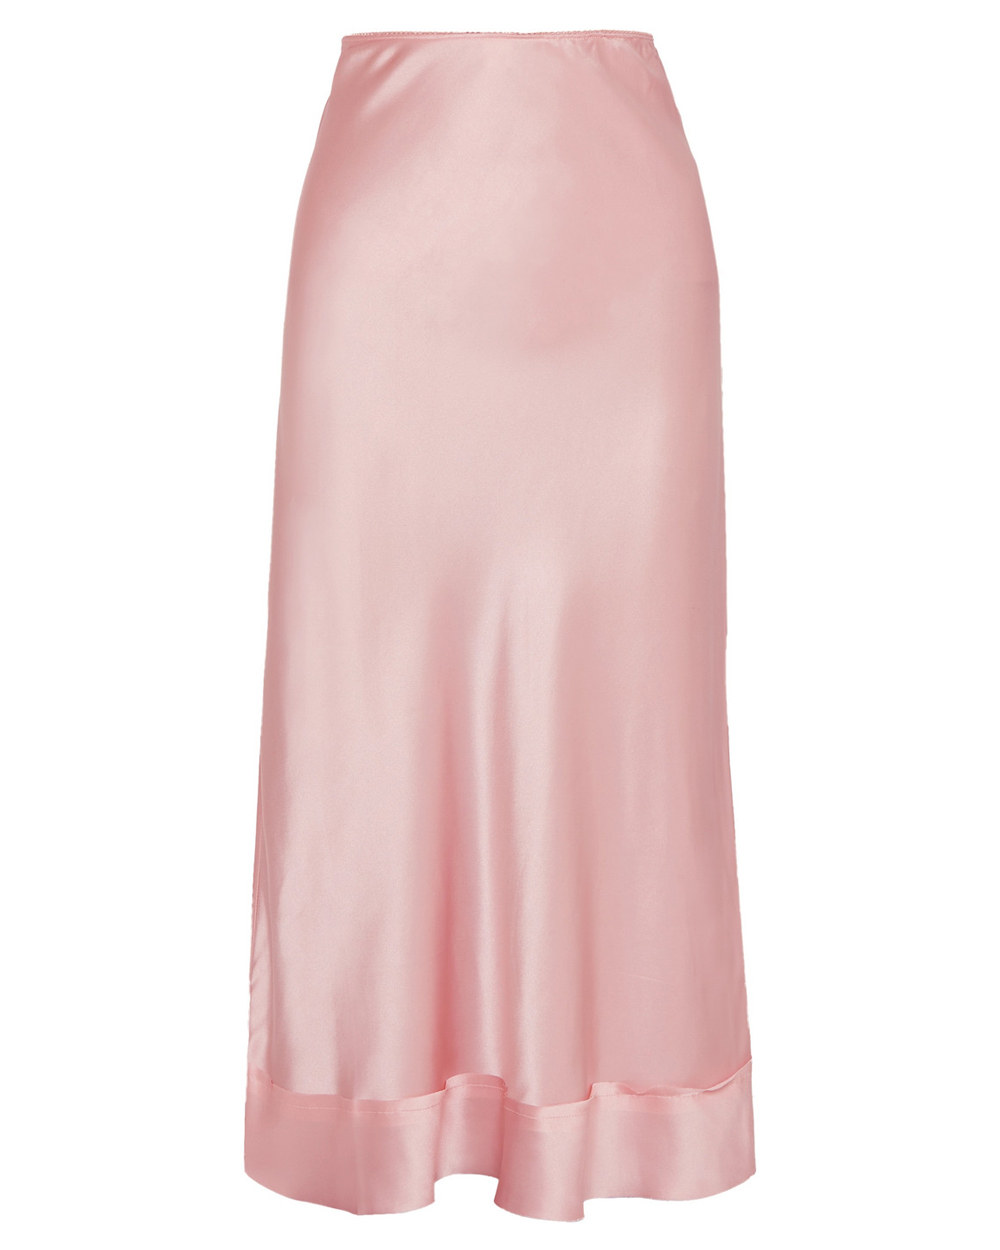 Lee Mathews silk midi skirt, $325 from Net-a-Porter